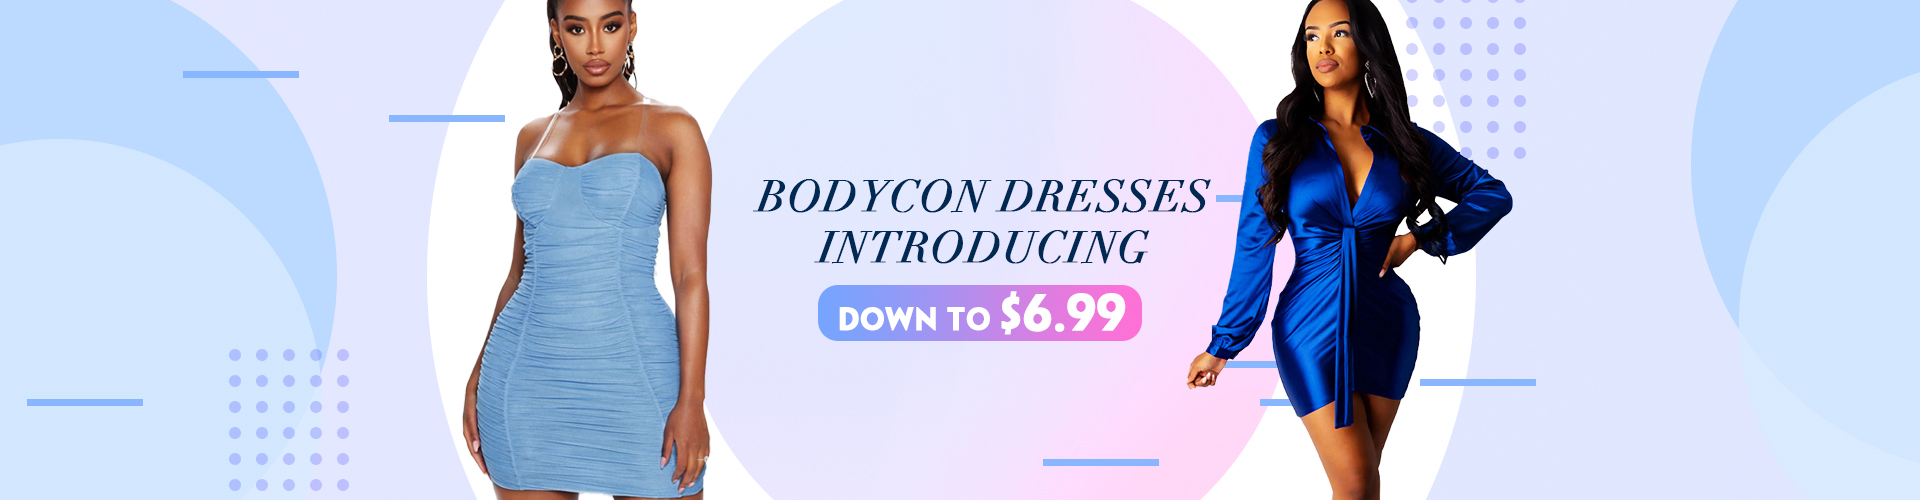 Pre-Autumn Bodycon Dresses